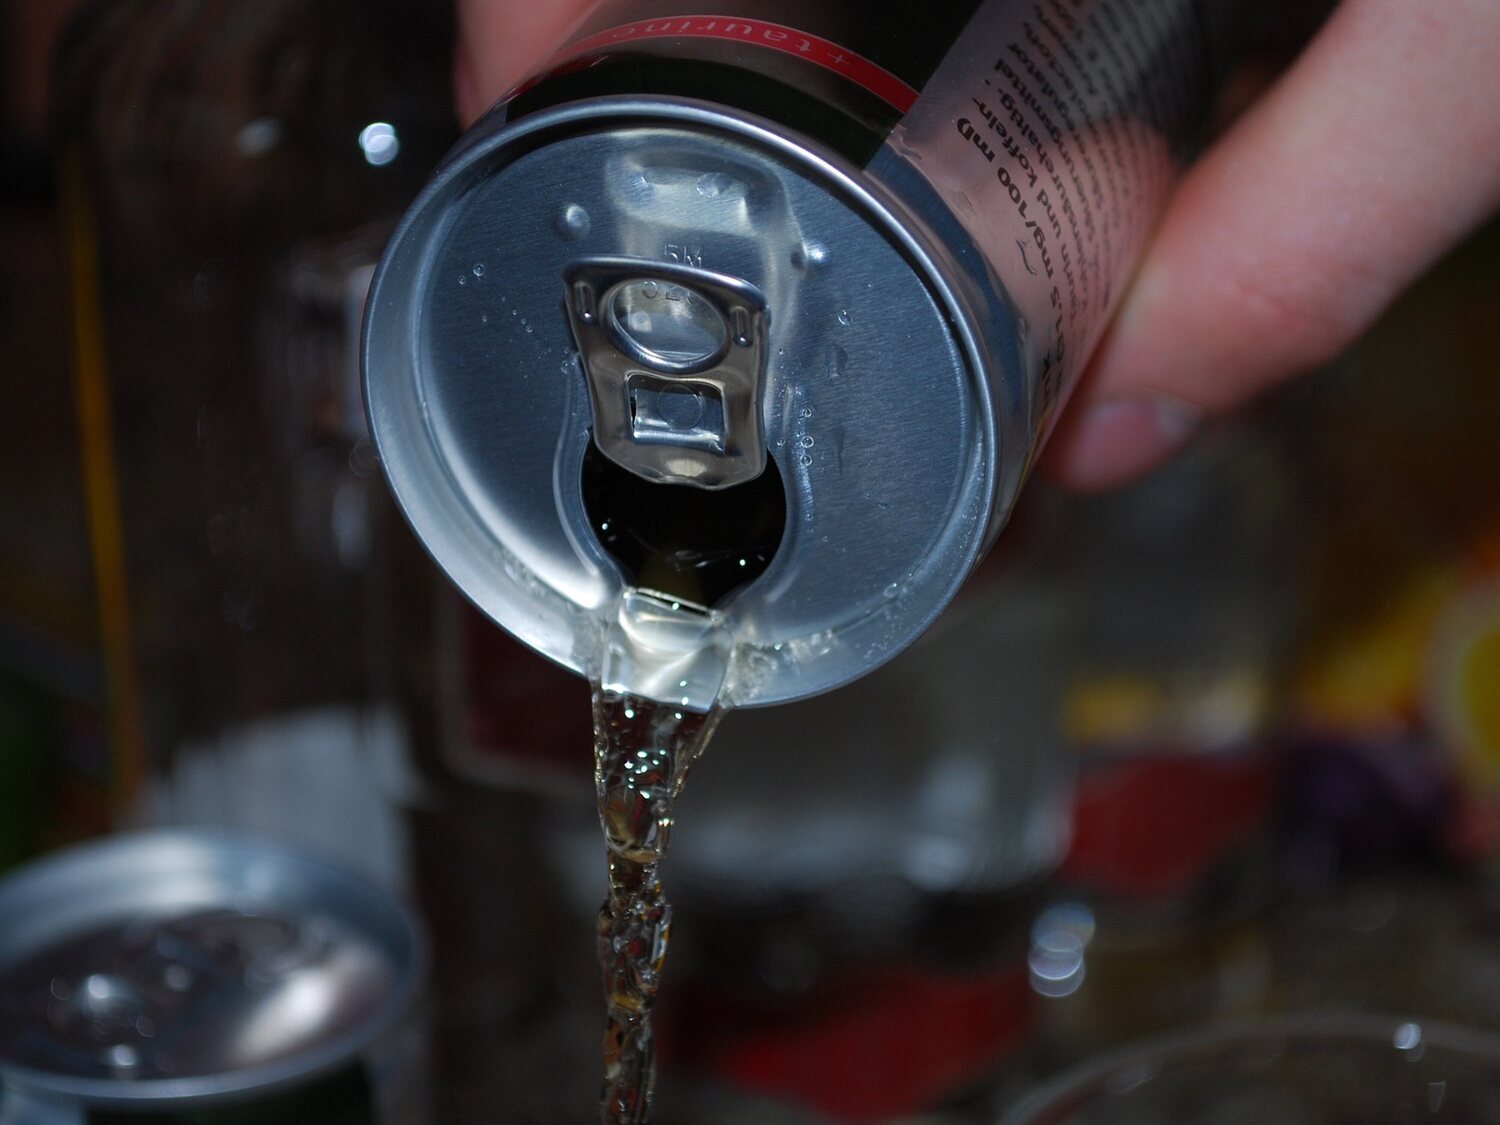 12 bebidas energéticas que es mejor no consumir, según la OCU